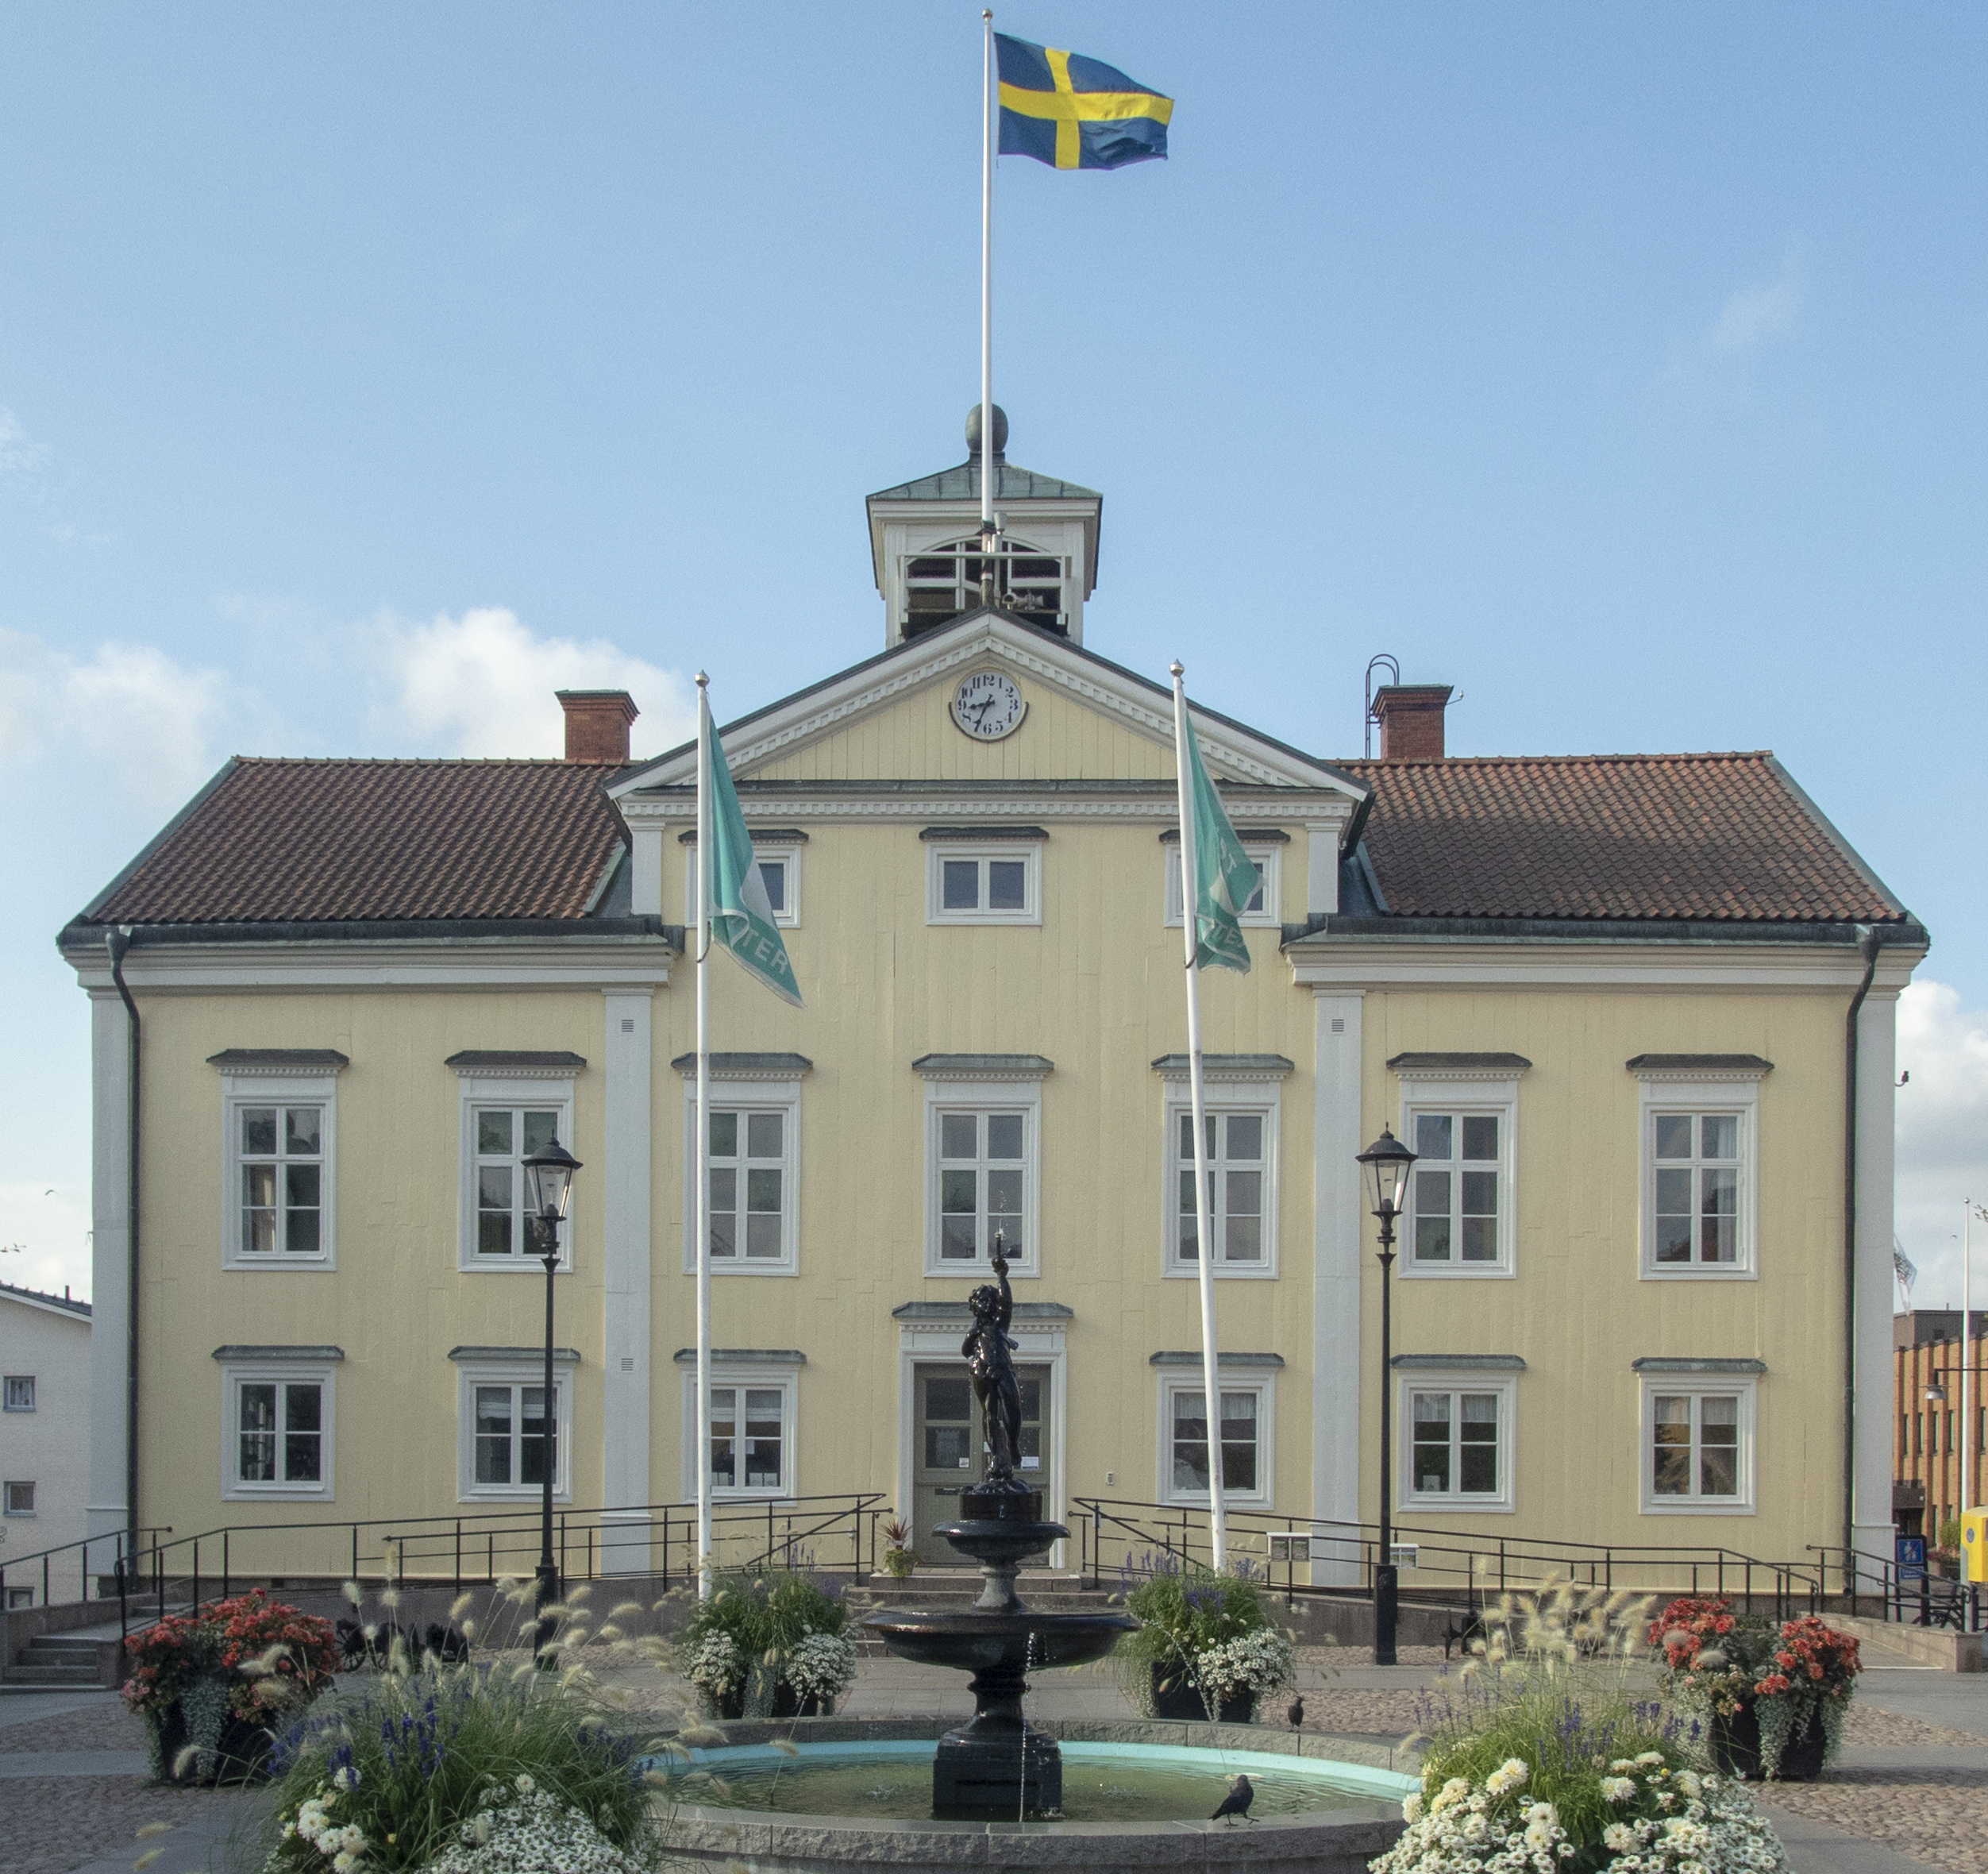 Är rådhuset i Vimmerby Sveriges vackraste byggnad genom tiderna?